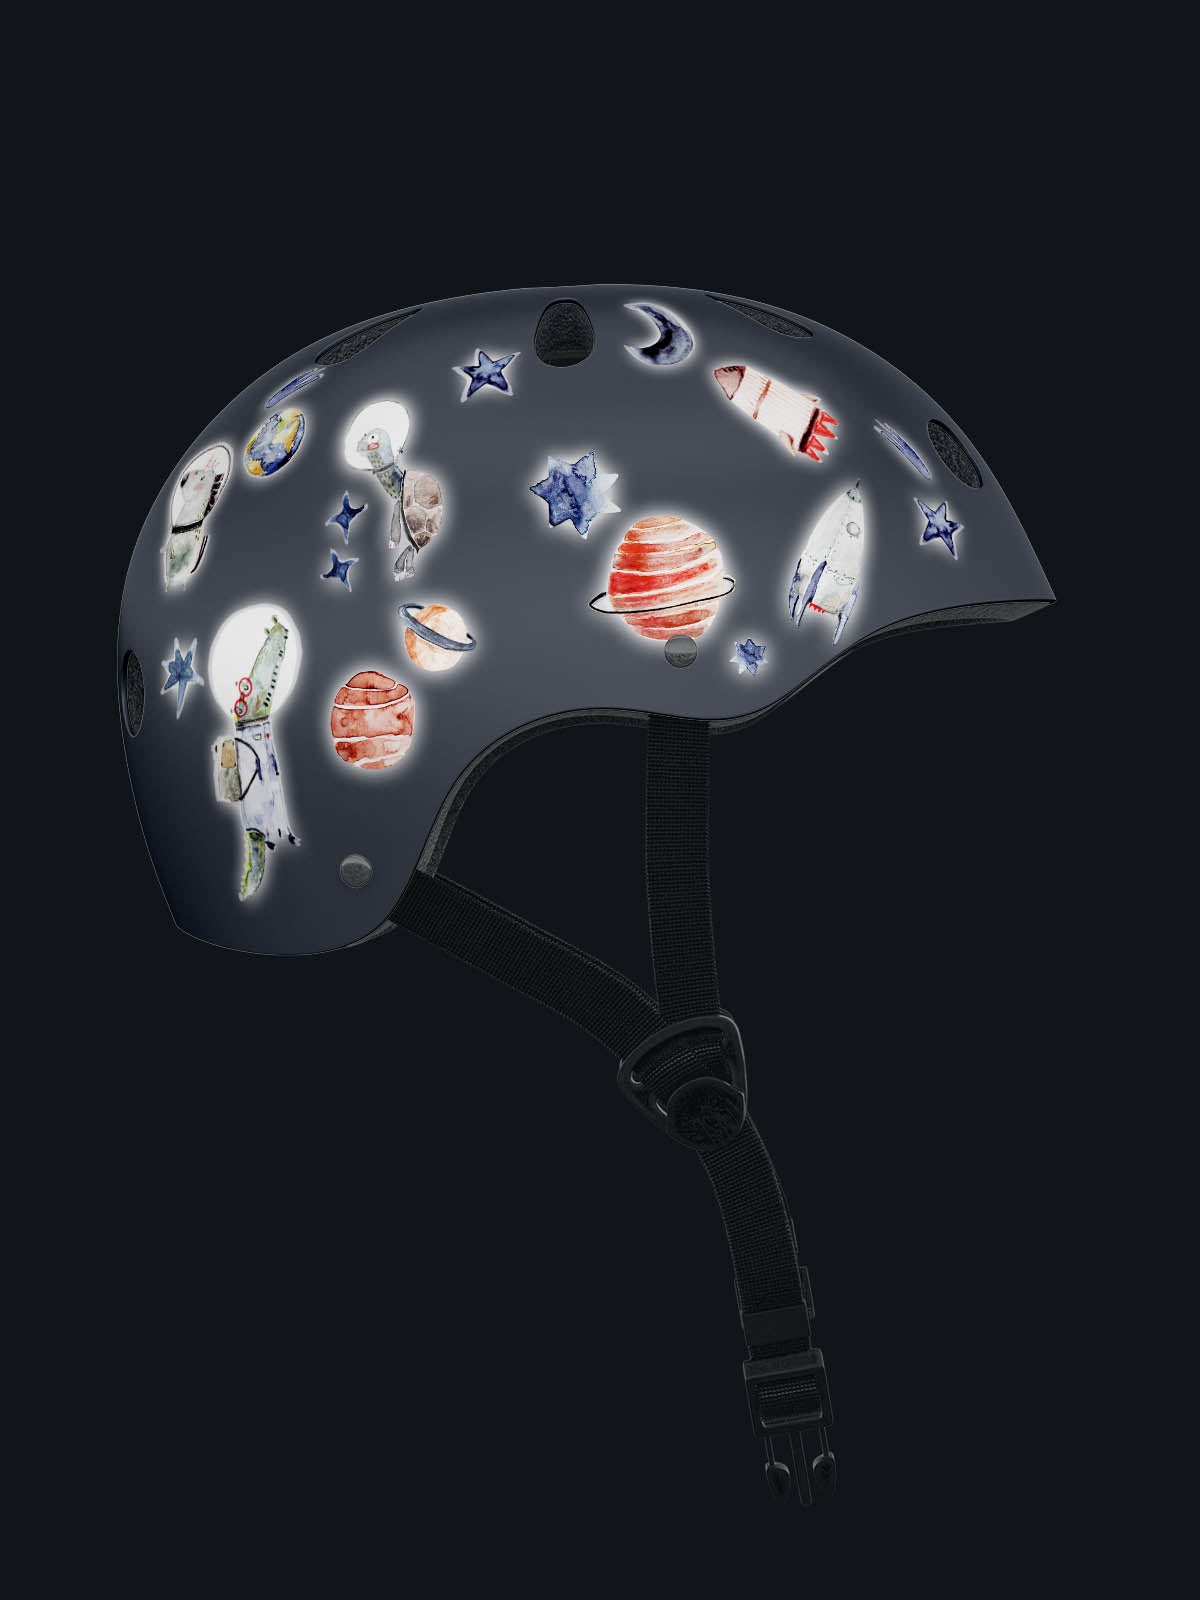 reflektierende Sticker auf einem blauen Helm bei Dunkelheit wenn sie reflektieren. Auf dem Helm kleben sterne, planeten, raketen, mond und einhorn 